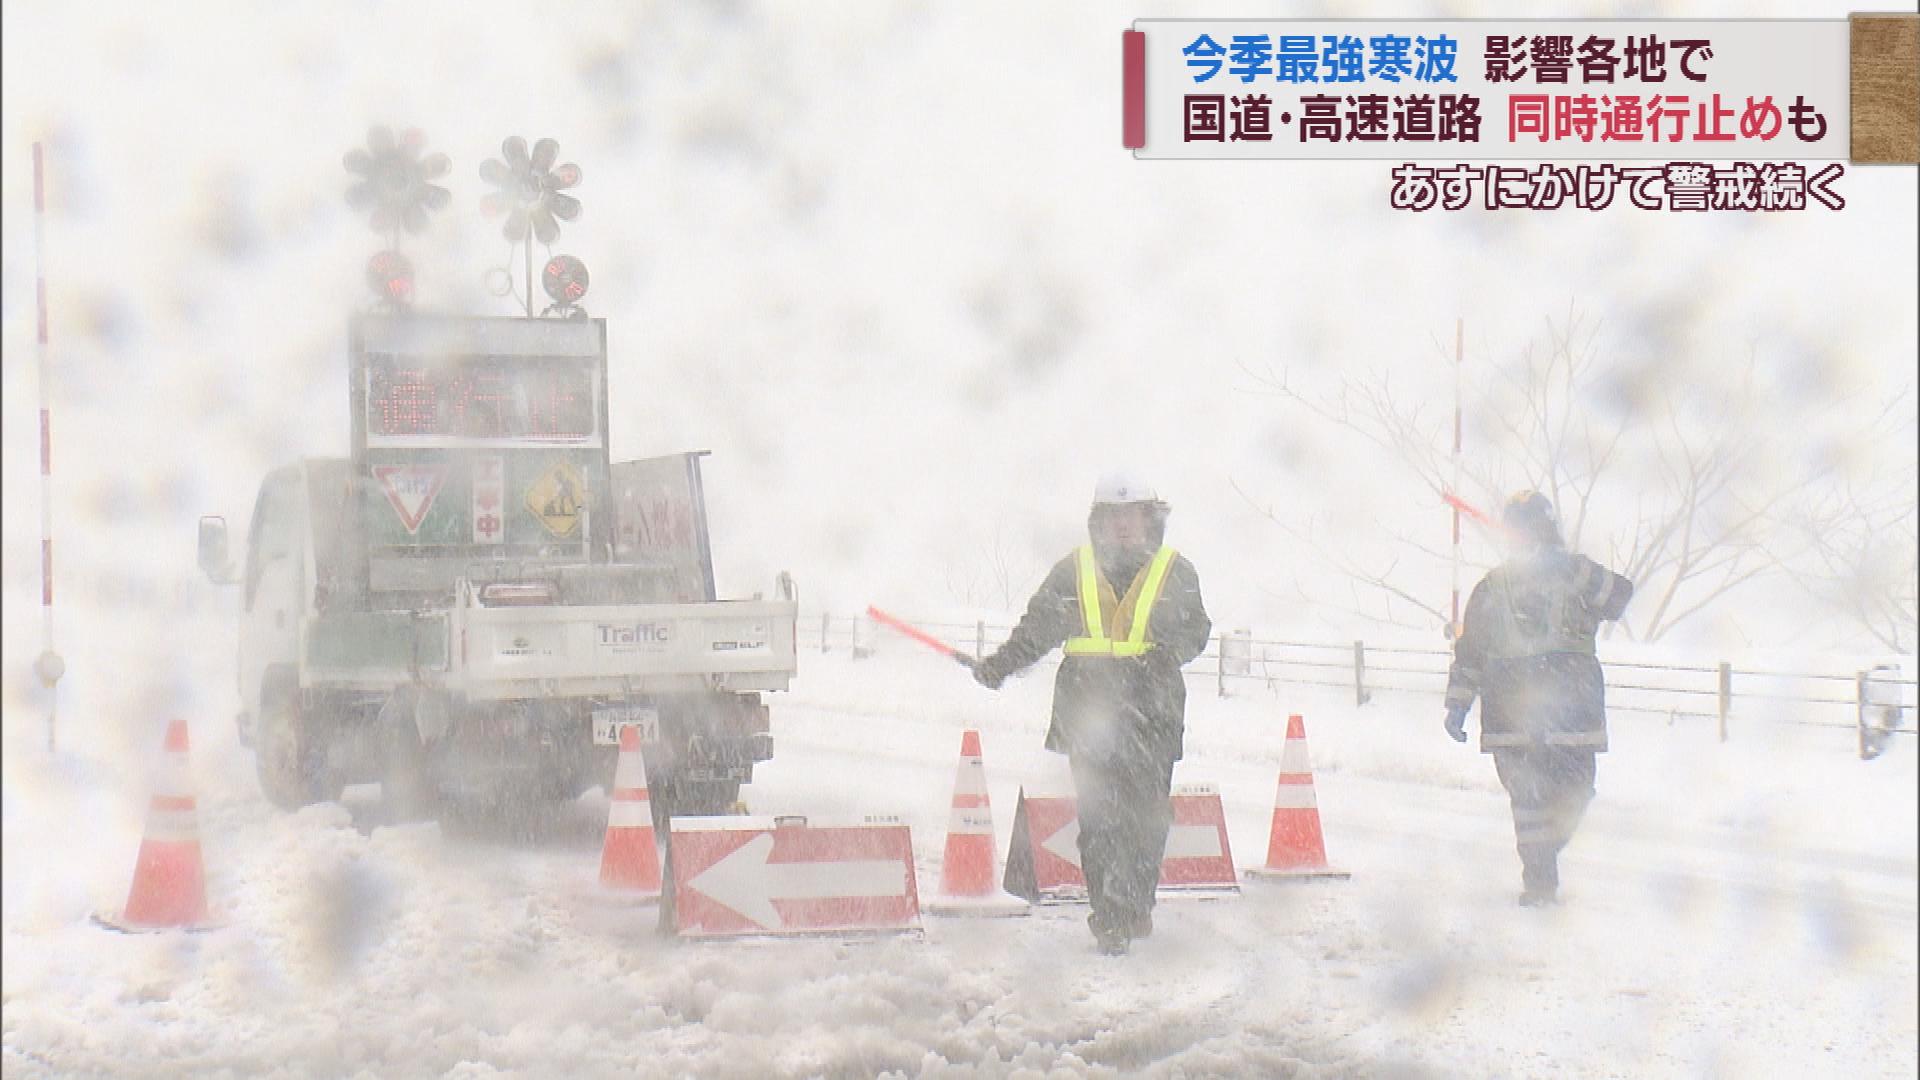 【今季最強寒波】降雪強まり影響拡大　国道・高速道路の同時通行止めも【新潟】